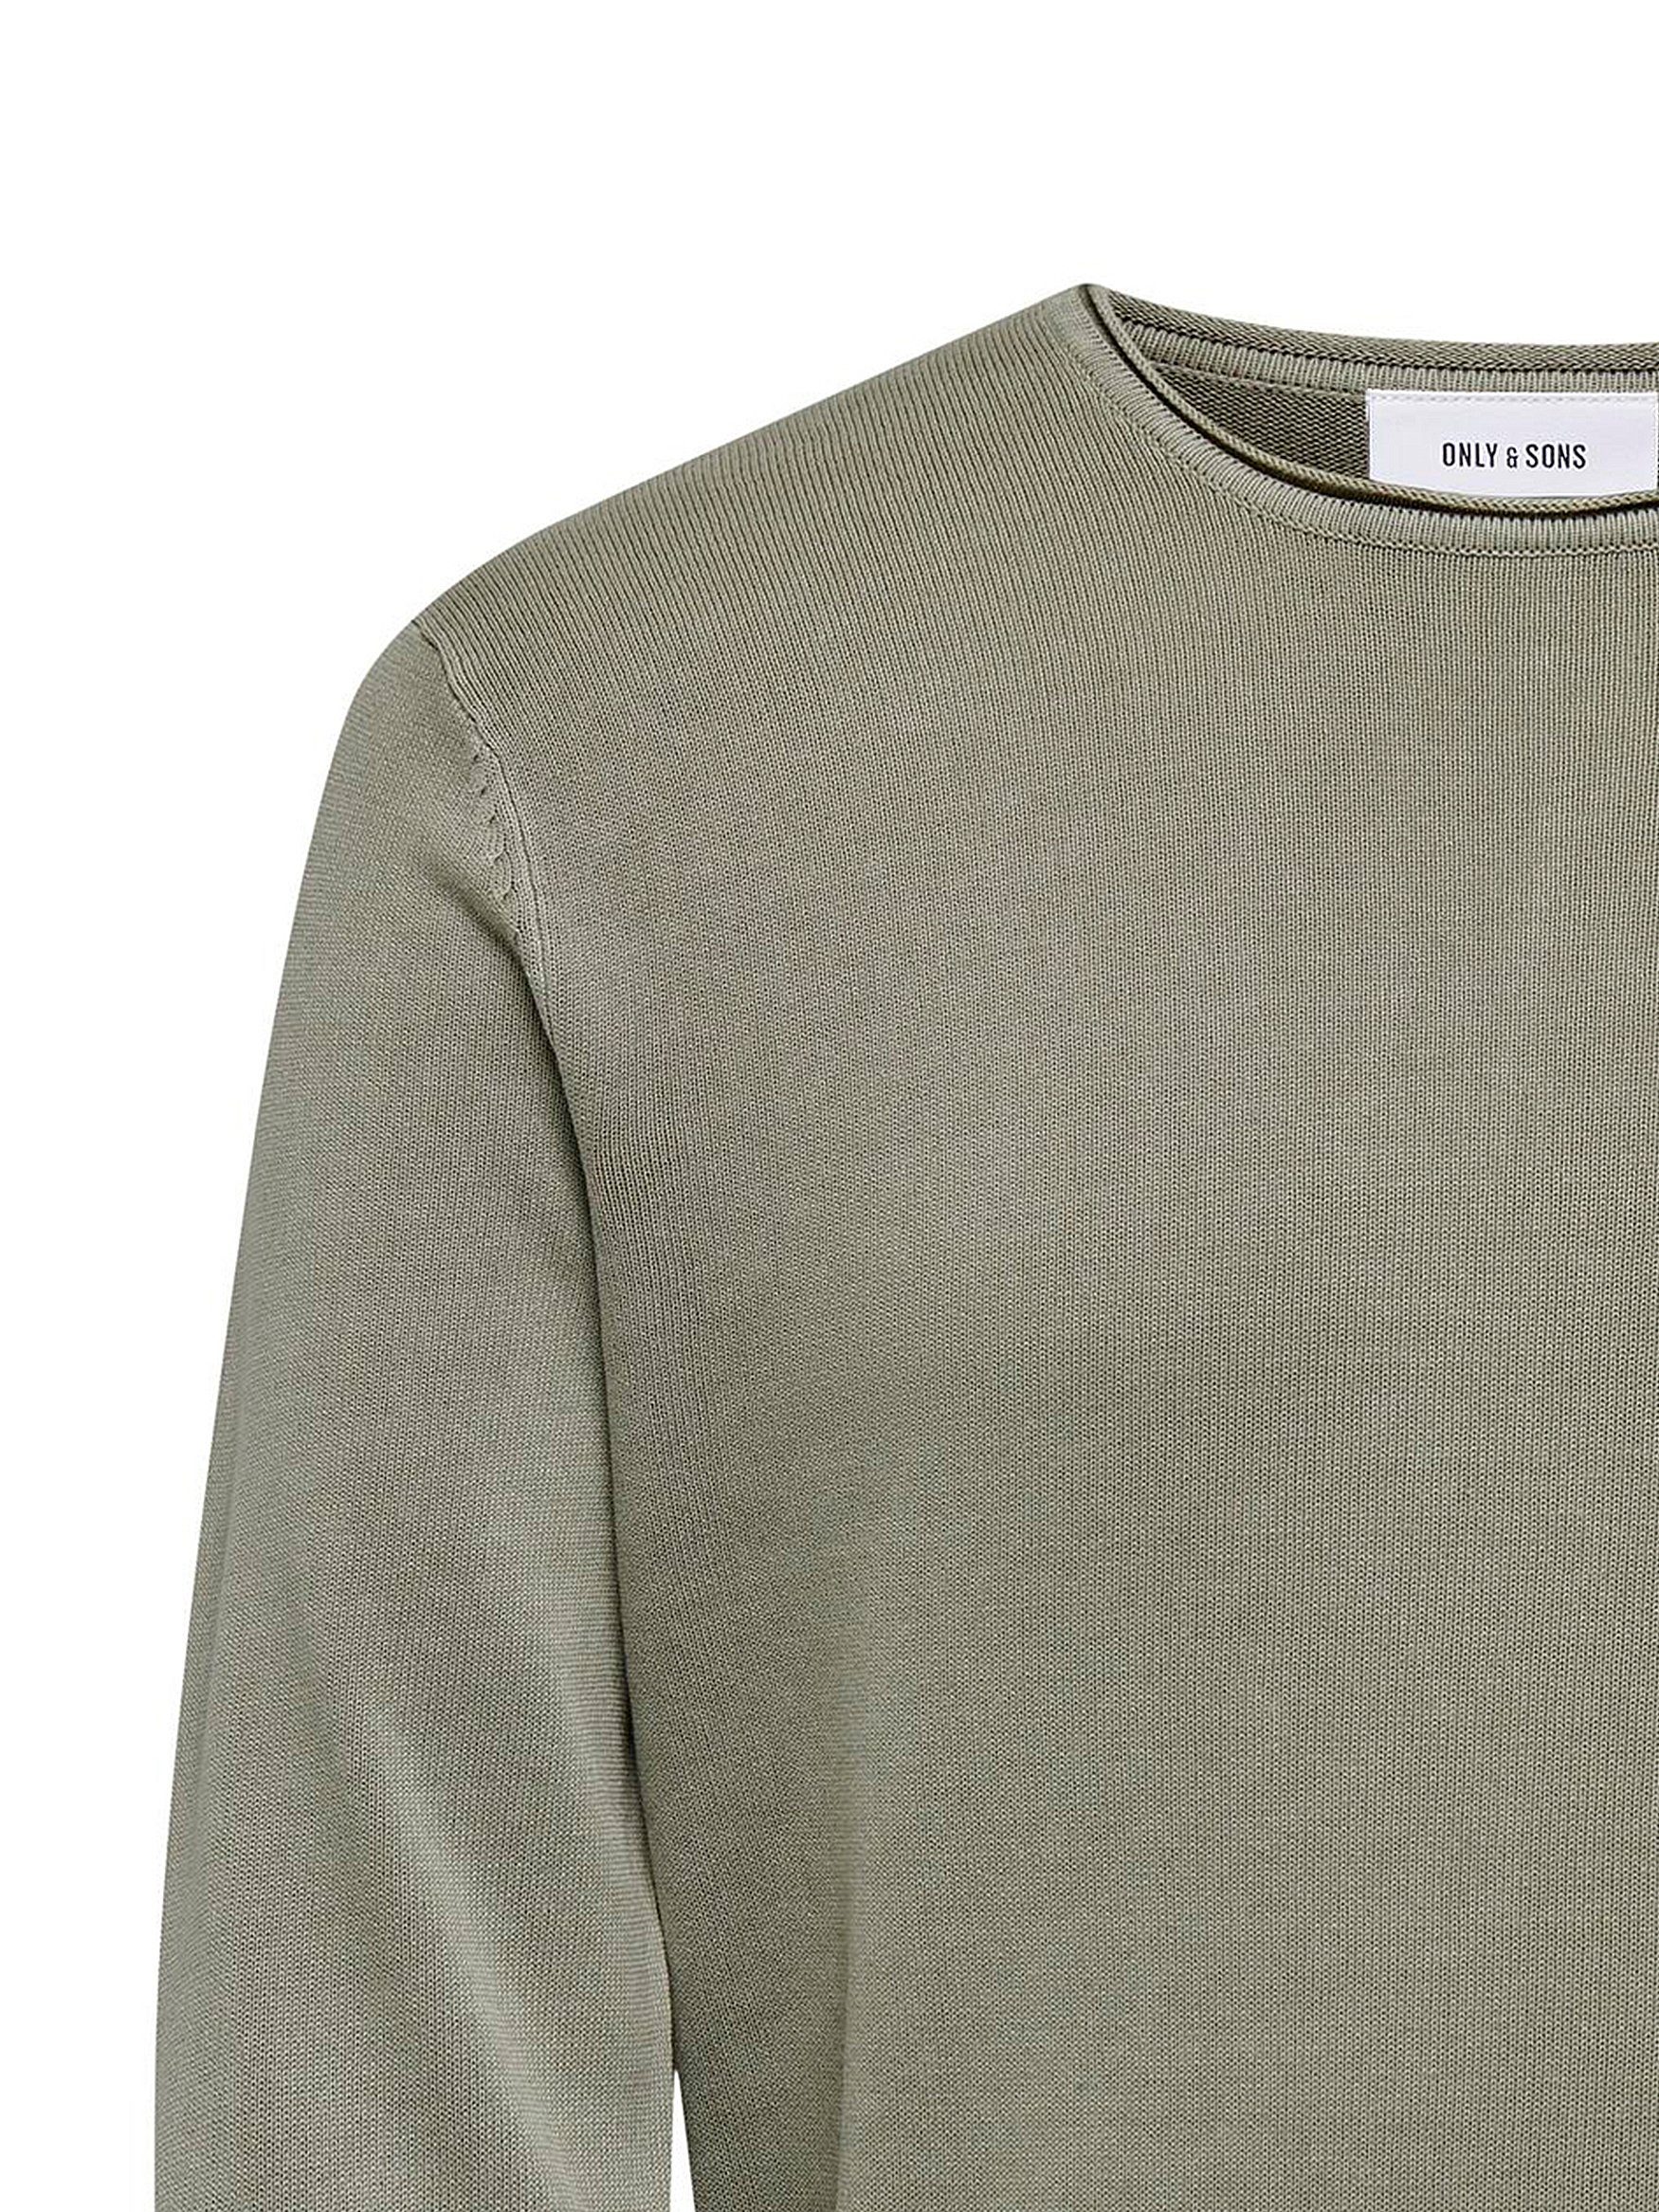 Strickpullover ONLY Schwarz-Weiß & SONS 6797 Lässiger Washed Sweater Rundhals Pullover in Feinstrick Design